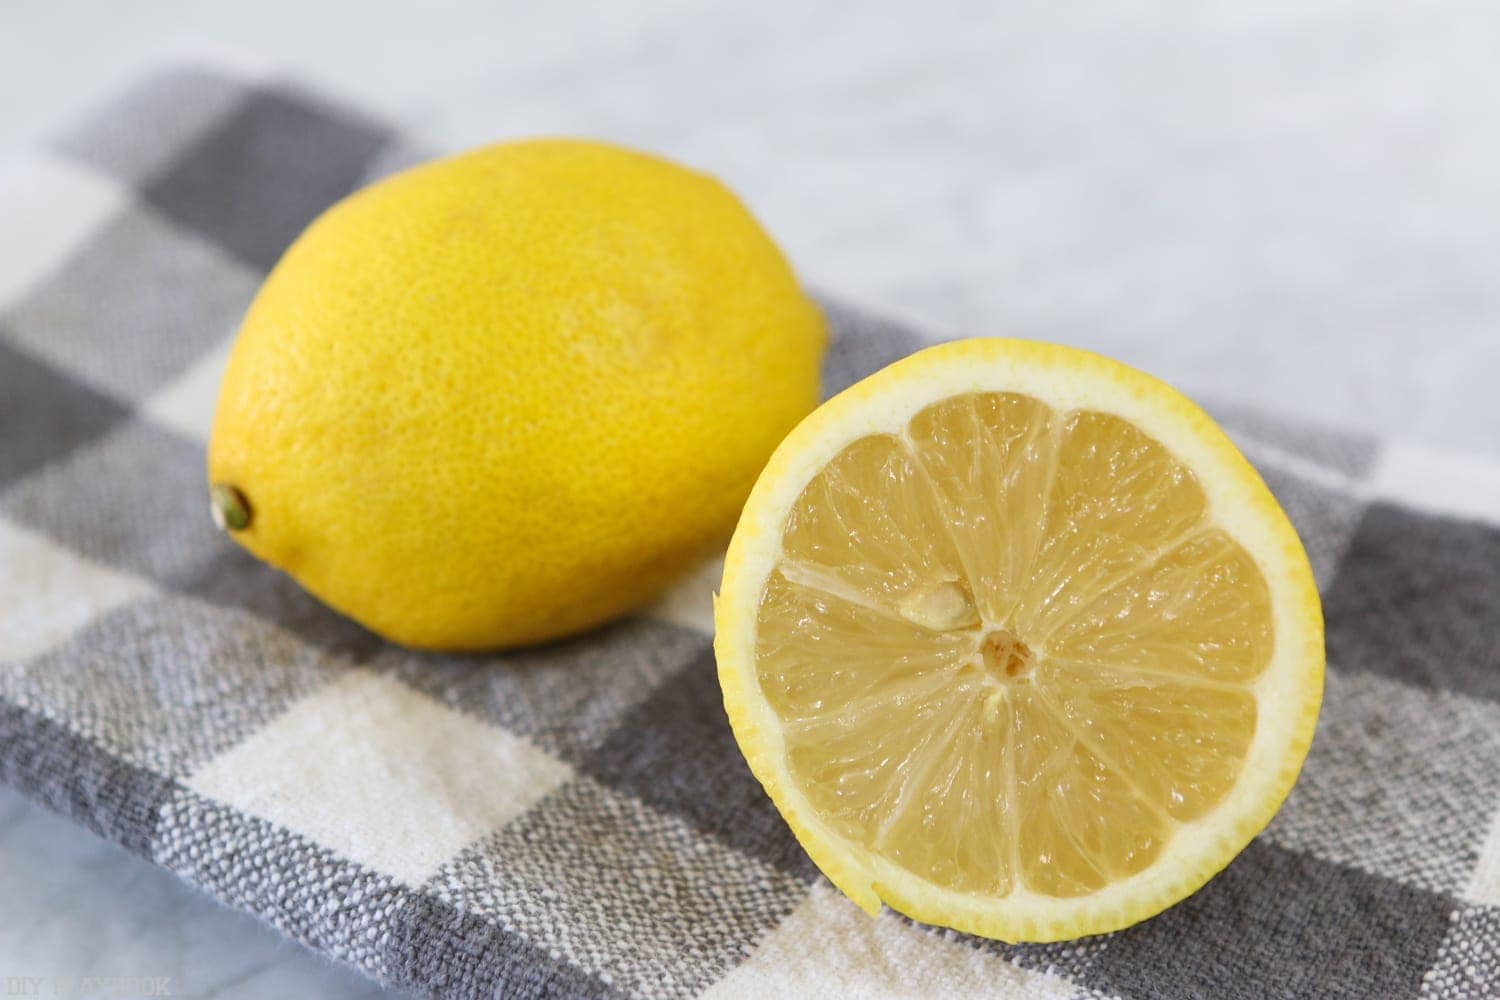 Slice the lemon in half for the stovetop potpourri. 